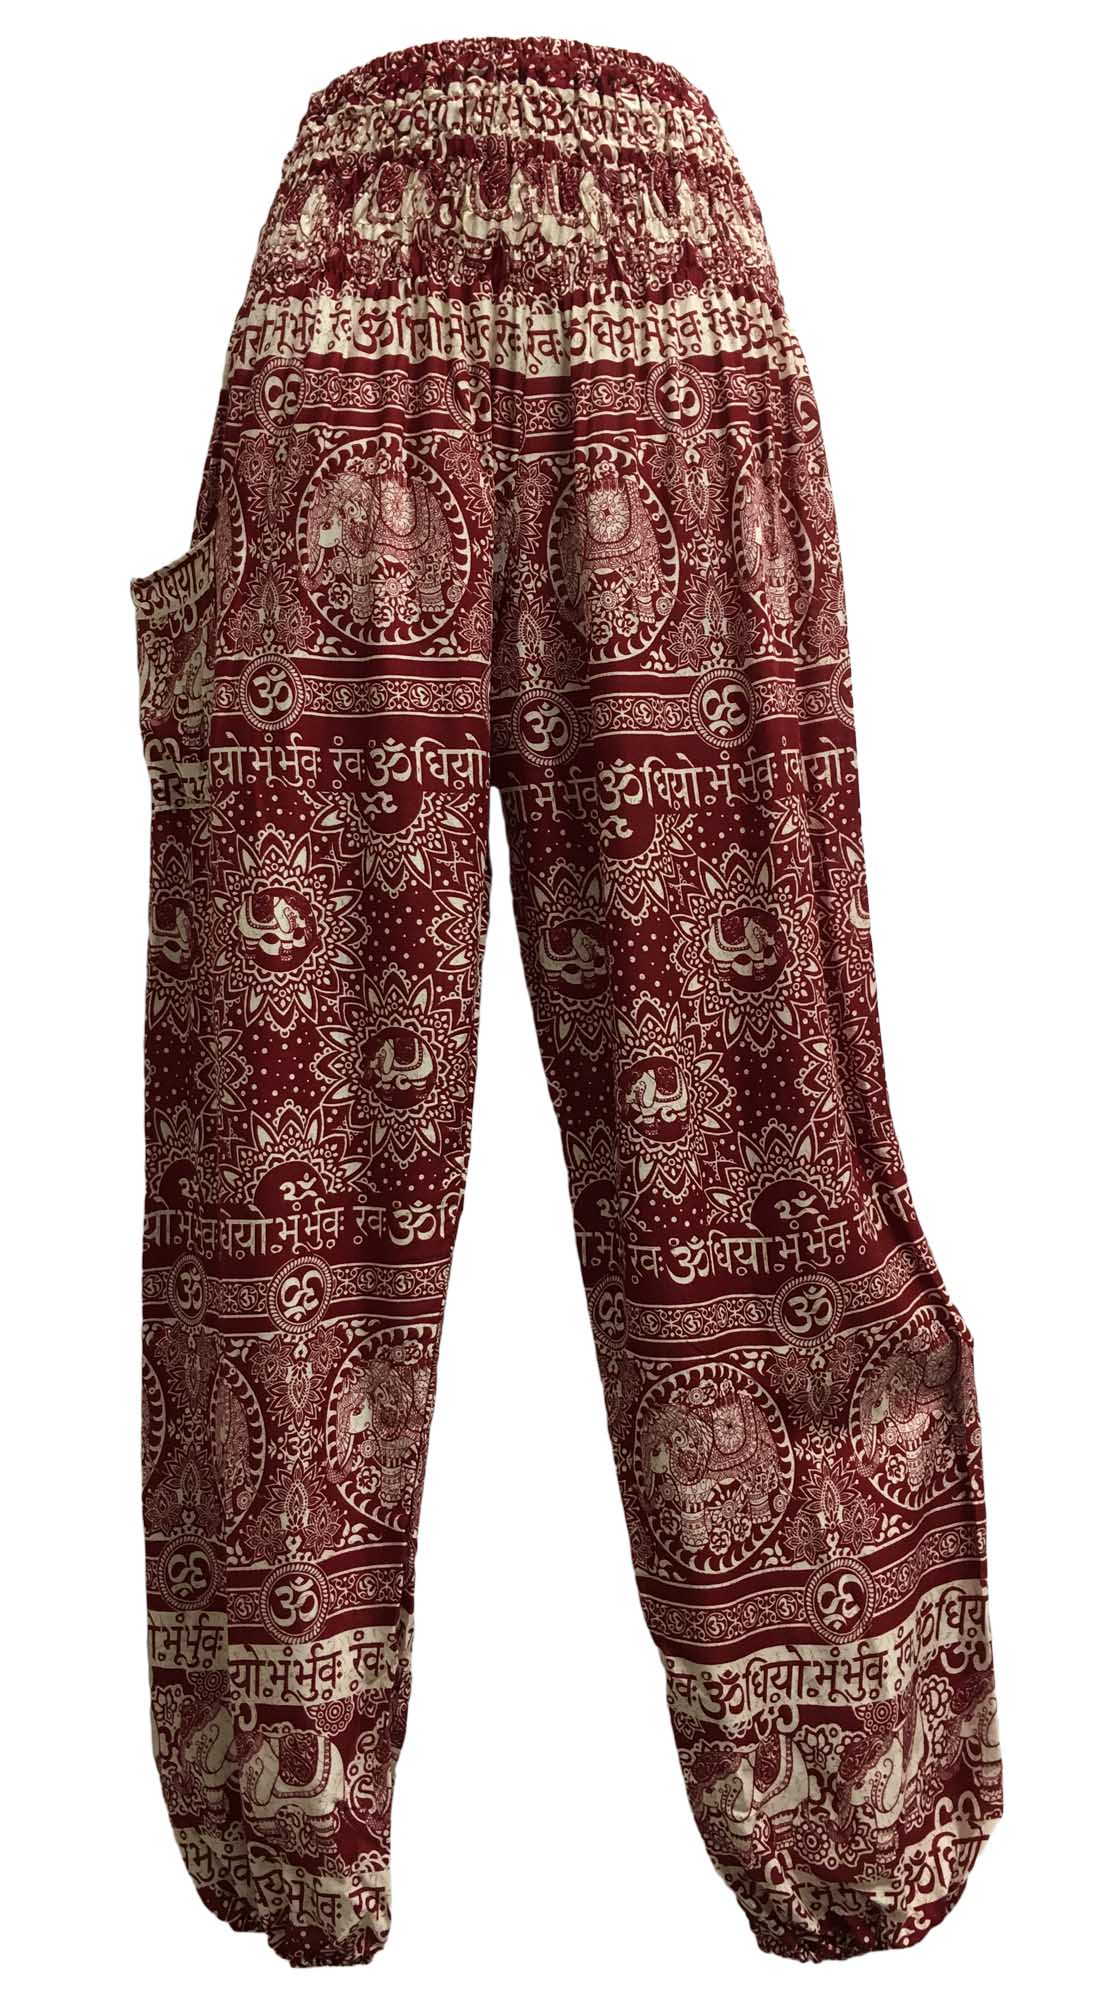 Bohemian Indian Ethnic Print Elephant Om Yoga Unisex Cotton Harem Pants - Ambali Fashion Women's Pants 